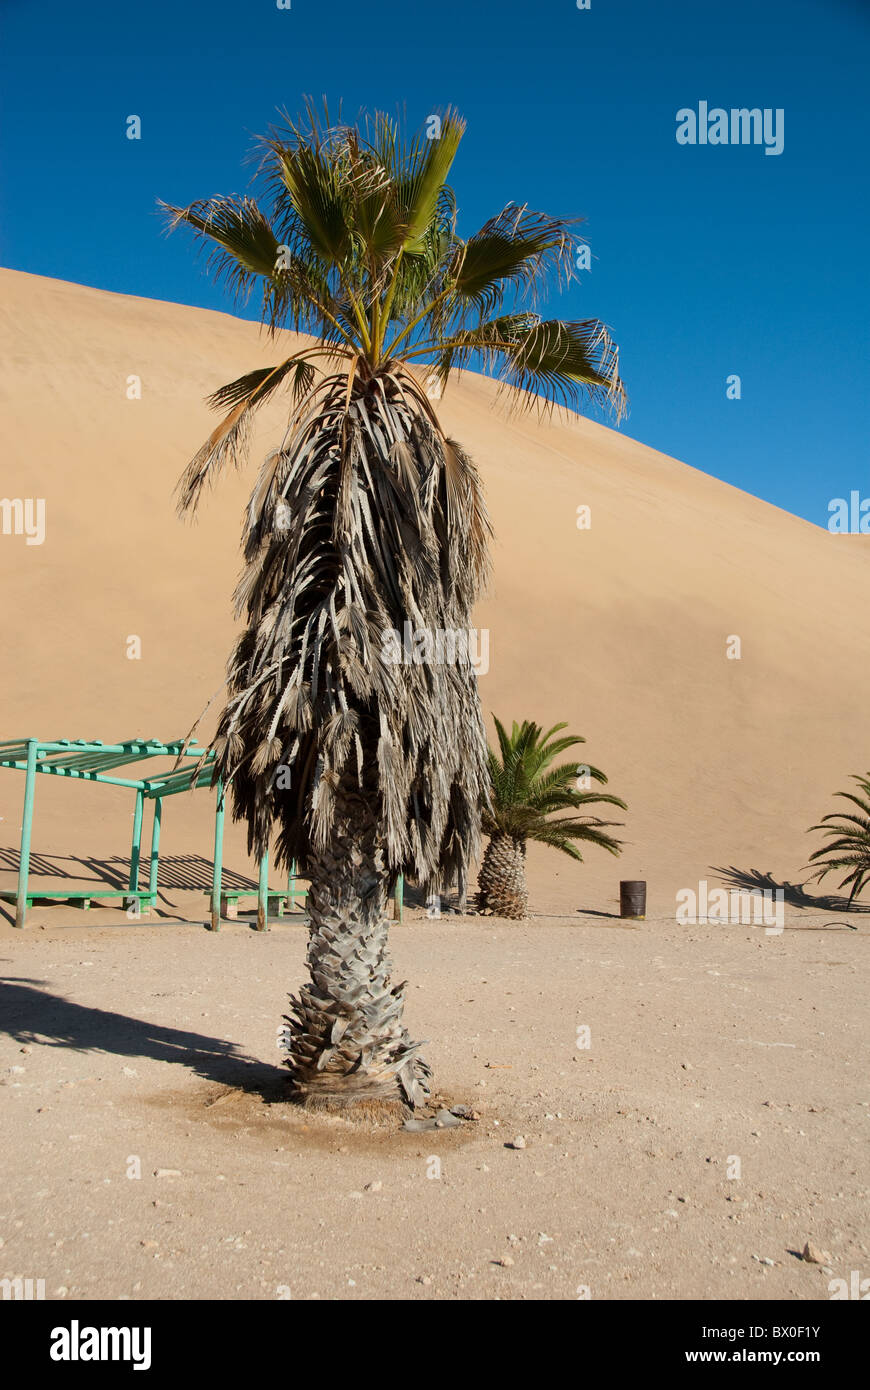 Afrika, Namibia, Swakopmund, Namib-Wüste. Sand Dünen an der Küste zwischen Walvis Bay & Swakopmund, berühmten Dune 7. Stockfoto